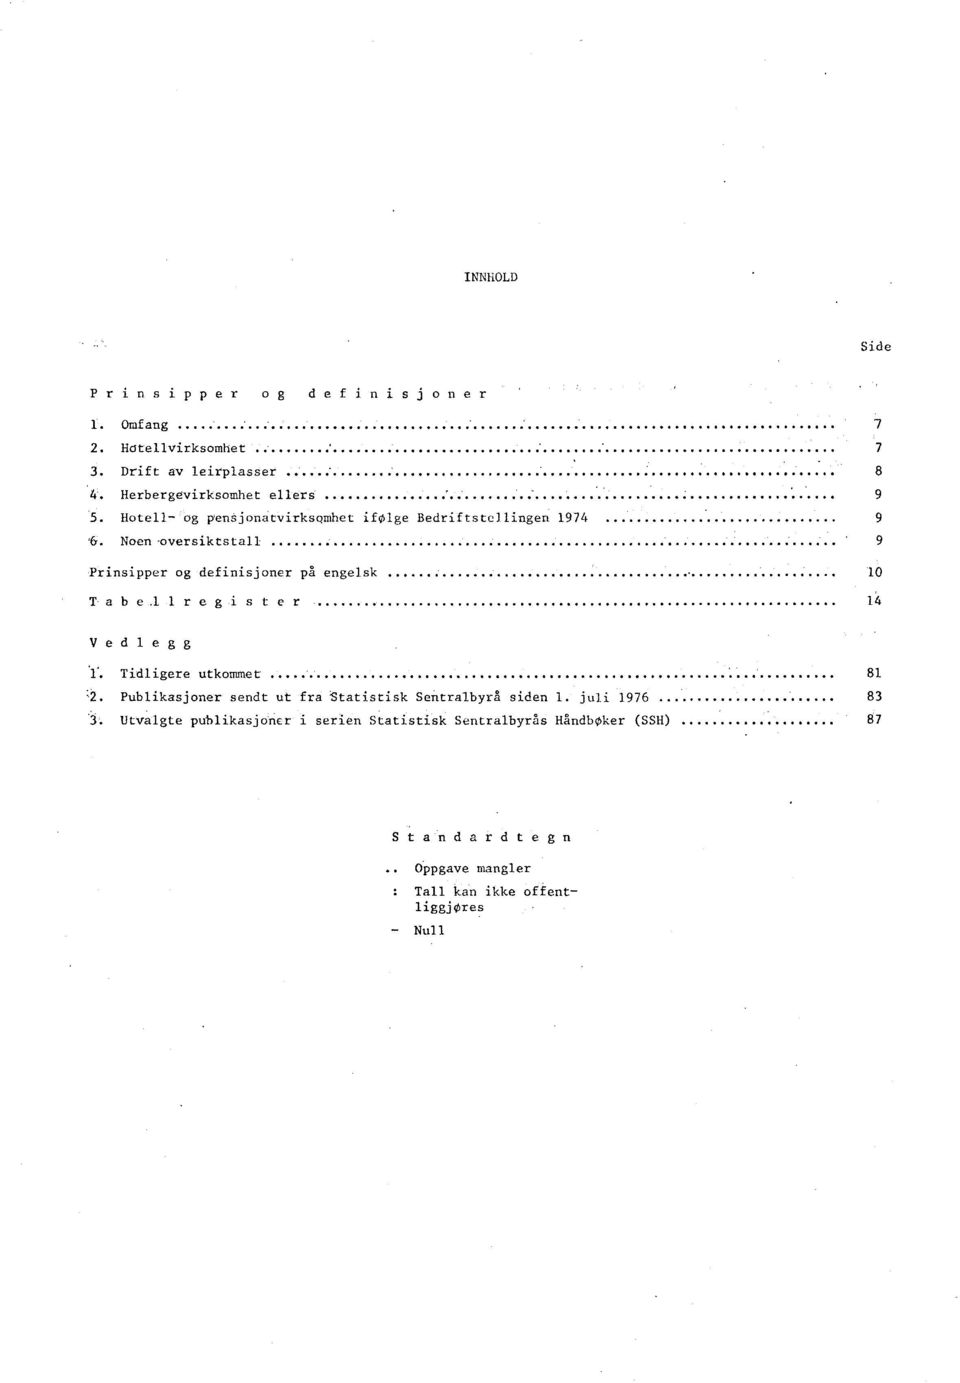 tvirksomhet ifølge Bedriftstellingen 1974 9 Noen -oversiktstall 9 Prinsipper og definisjoner på engelsk 10 Tabellregister 14